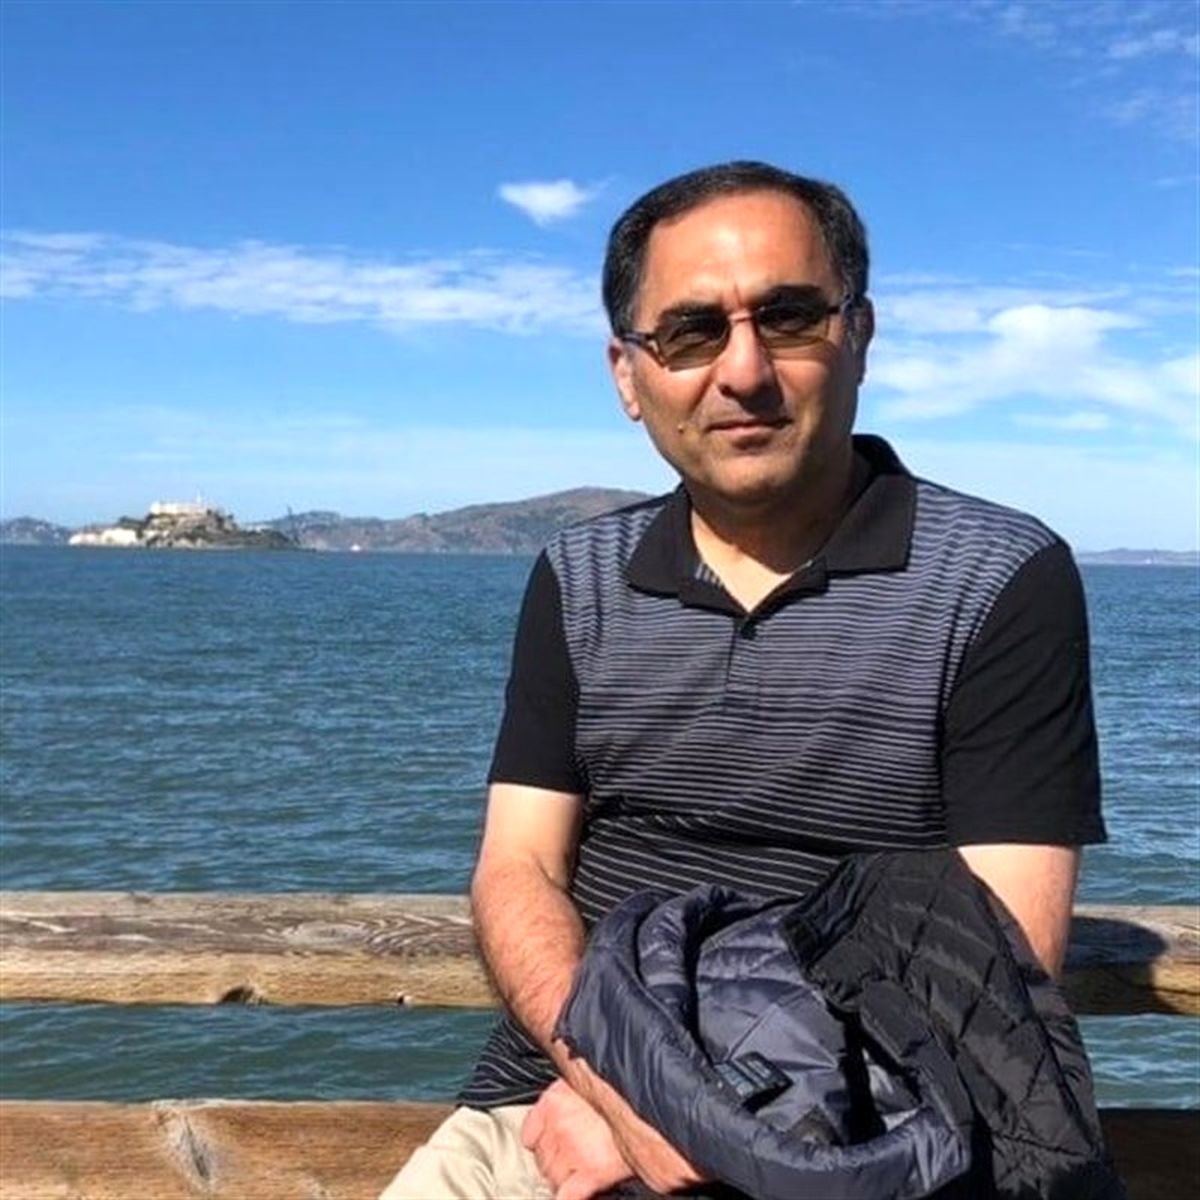 روایتی تلخ از وضعیت استاد ایرانی زندانی شده در اداره مهاجرت آمریکا